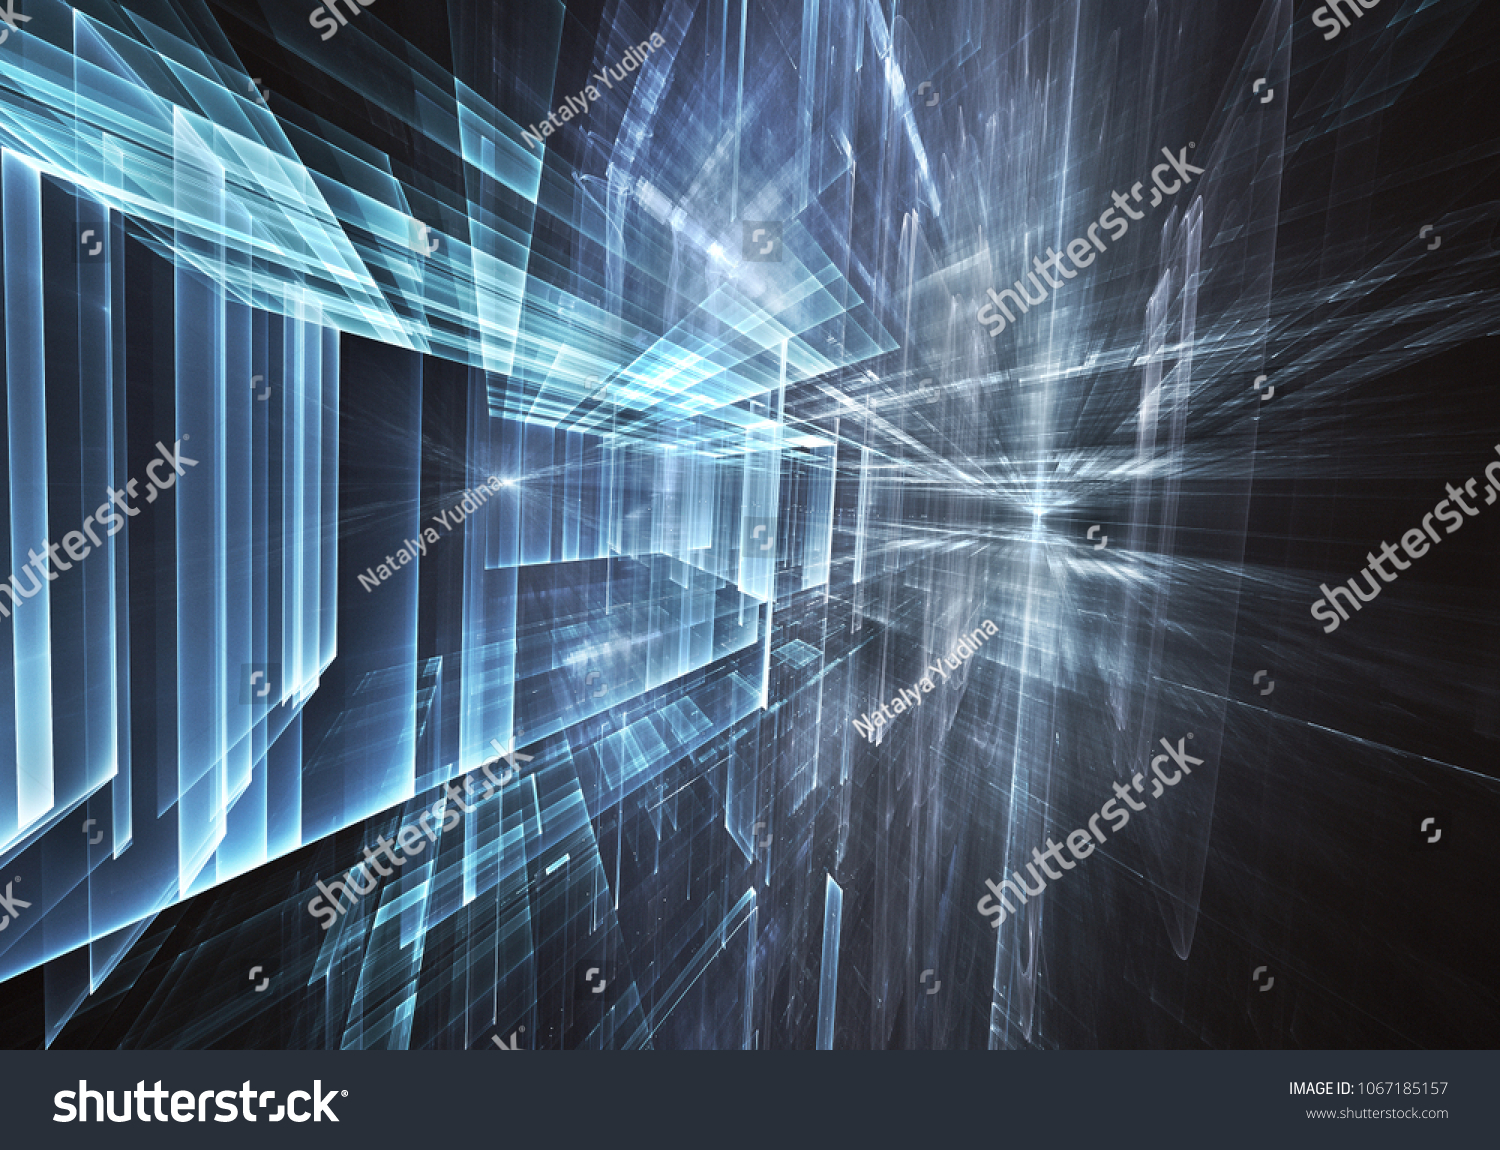 Fractal art - computer image, technological background #1067185157